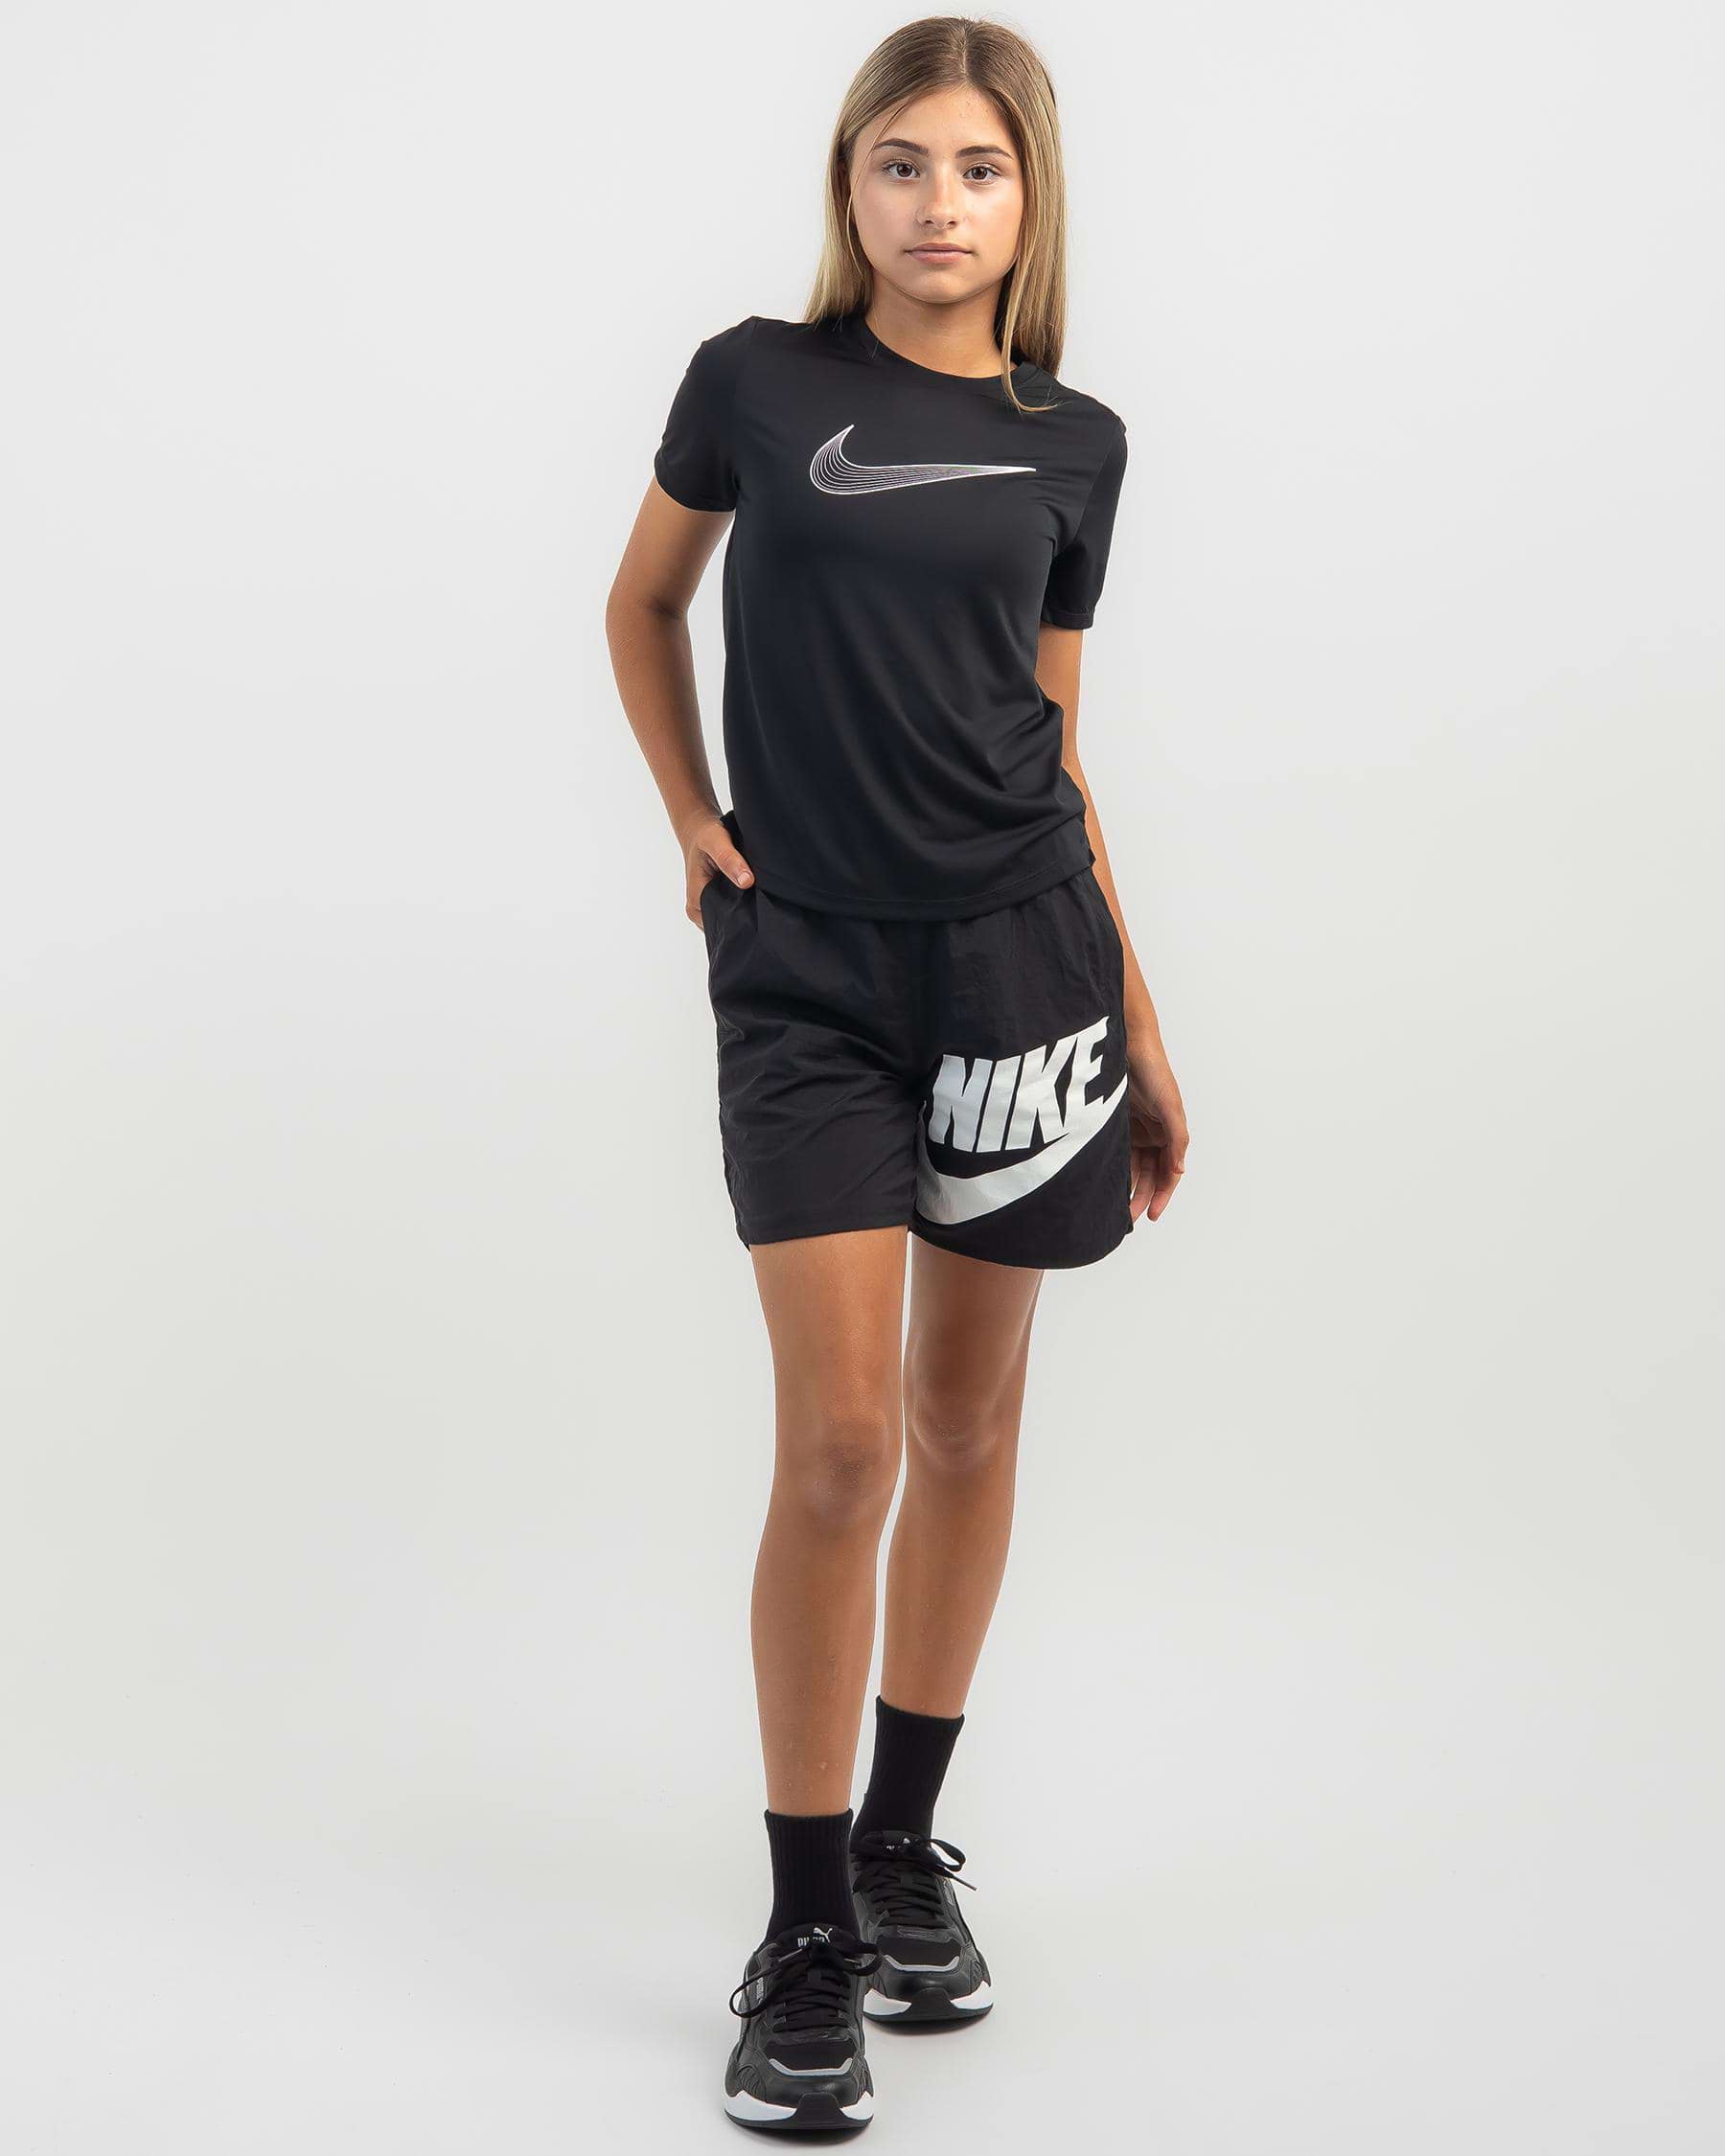 Nike Girls' DriFit One Short Sleeved T-Shirt In Black/white - Fast ...